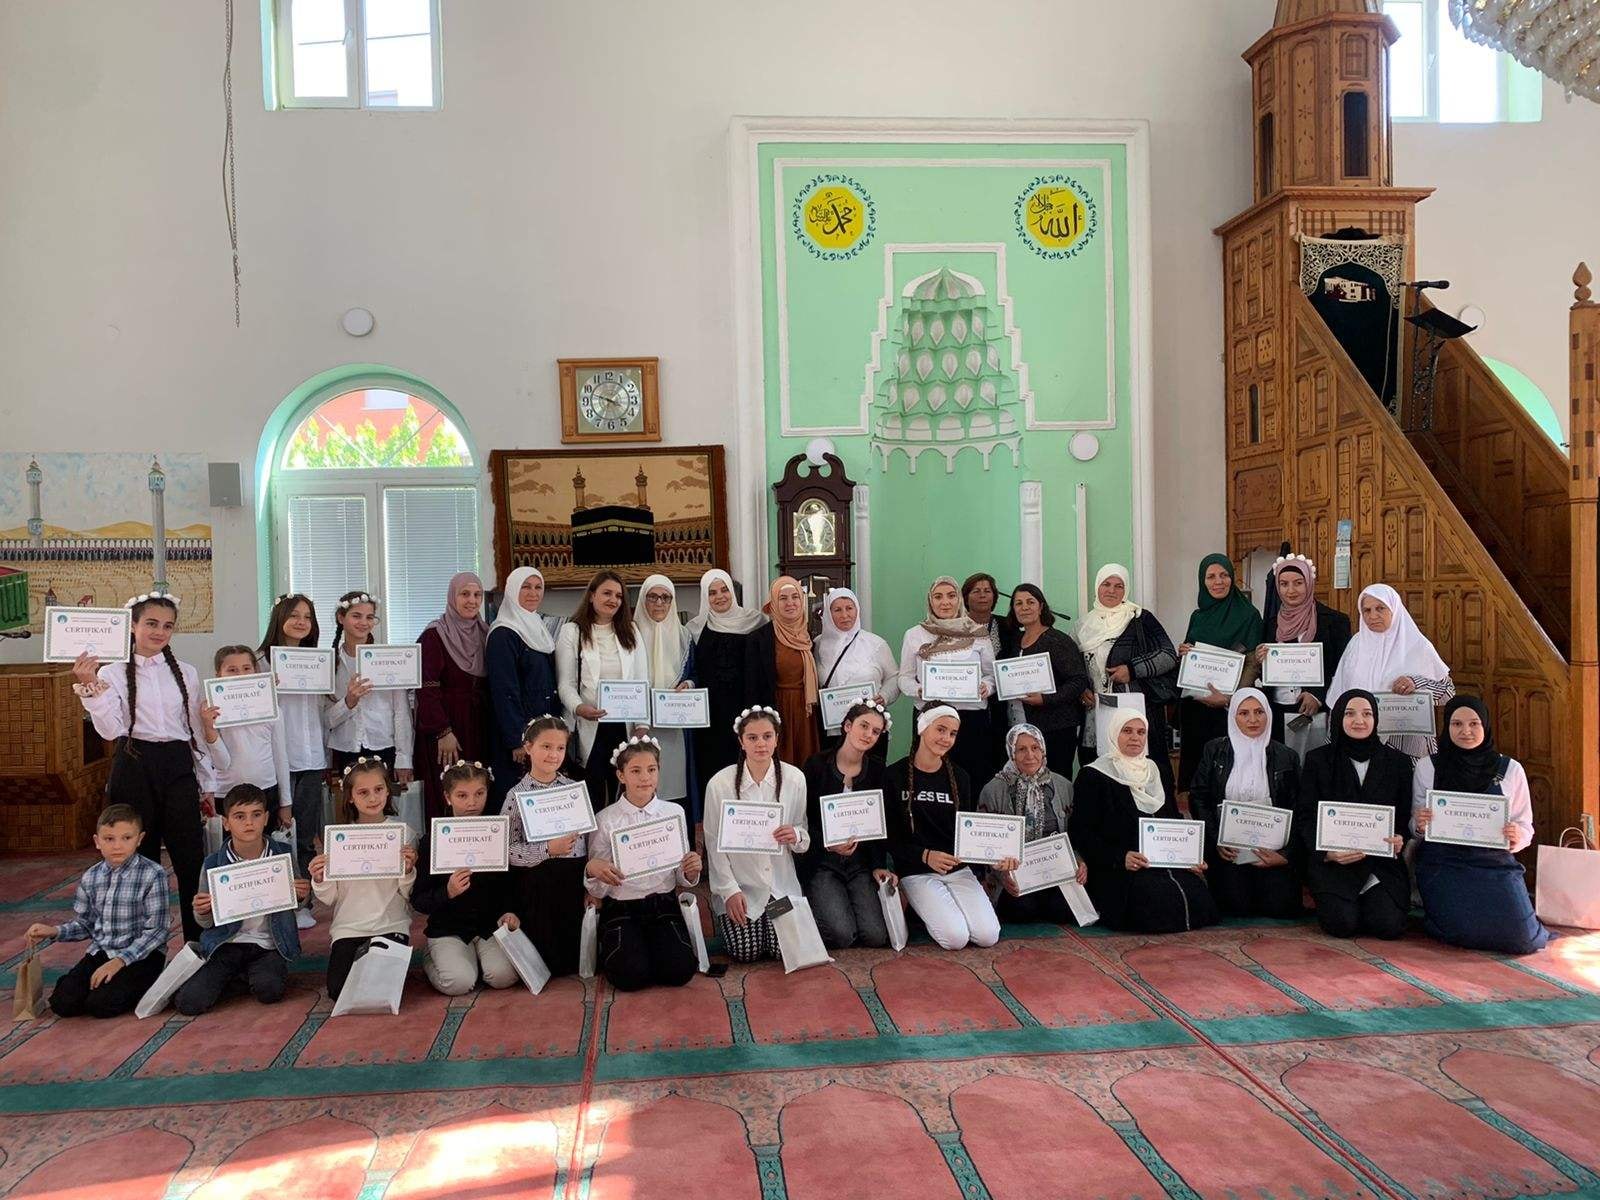 احتفالية تكريمية لأطفال كتًاب مسجد سوهاريك بجنوب كوسوفا بهدف إشعار الأطفال بأهمية إنجازهم في تعلم الأحرف العربية